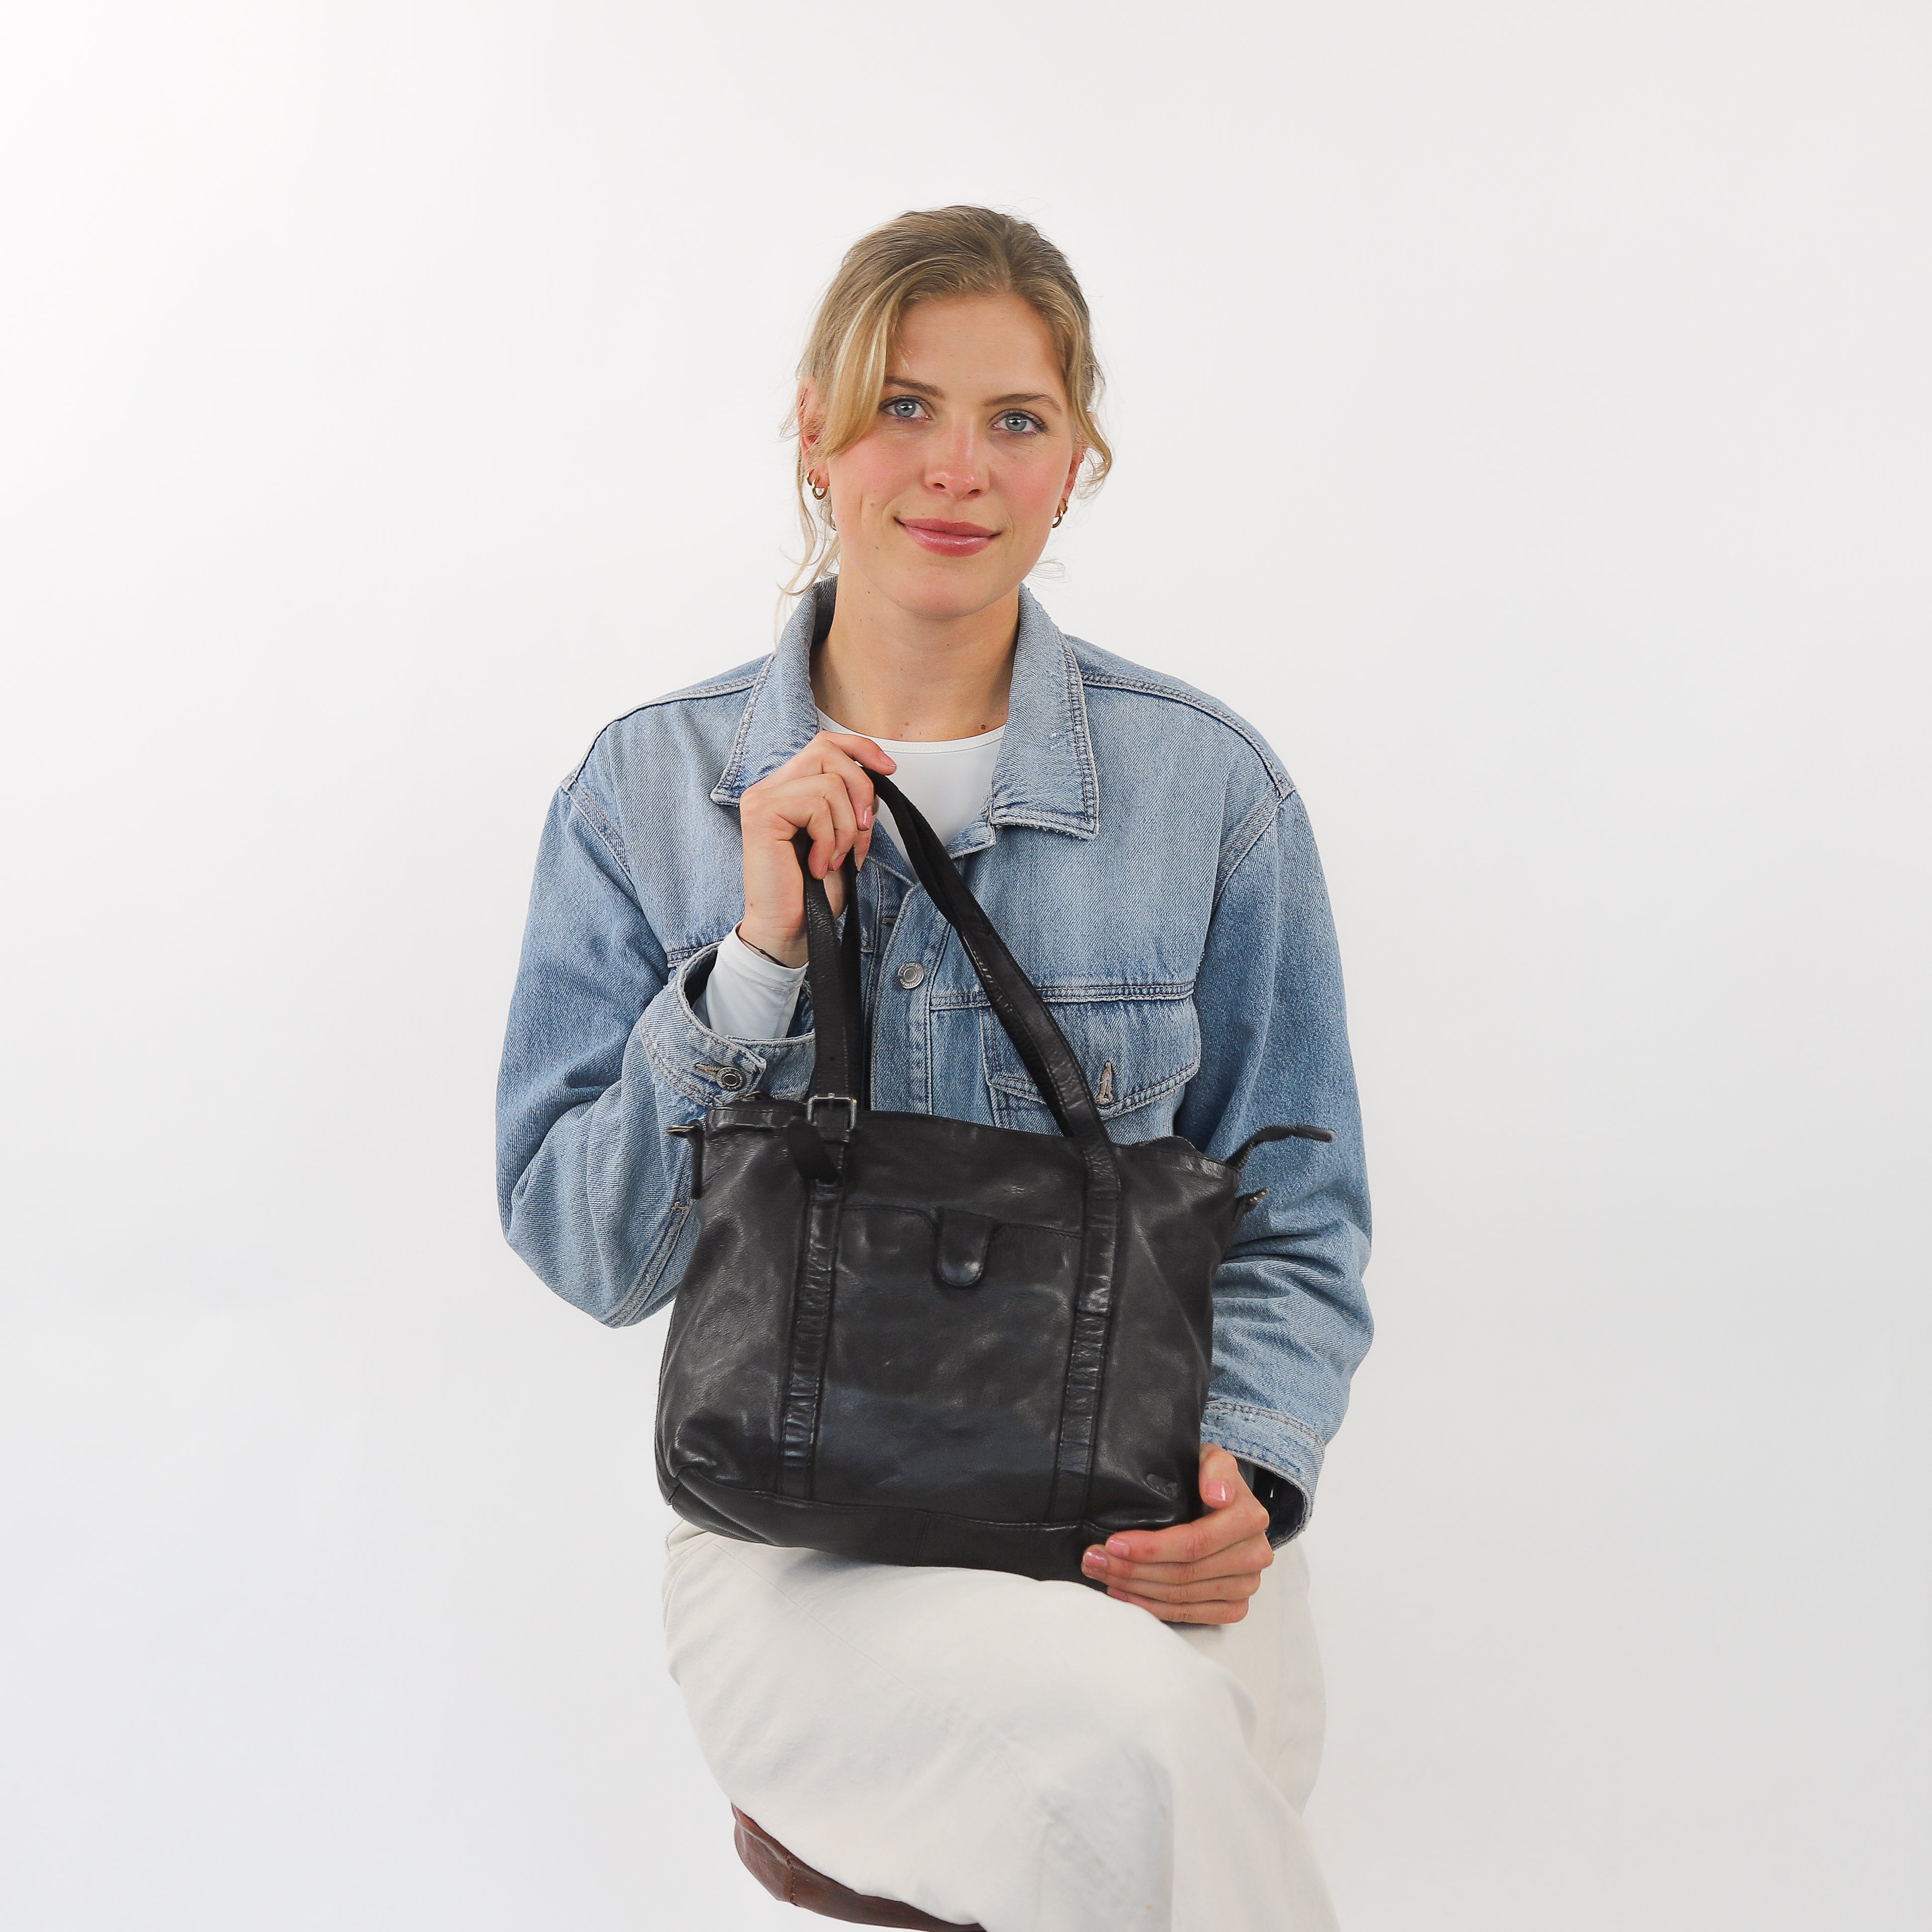 Hand/shoulder bag 'Anja' black - CL 36739